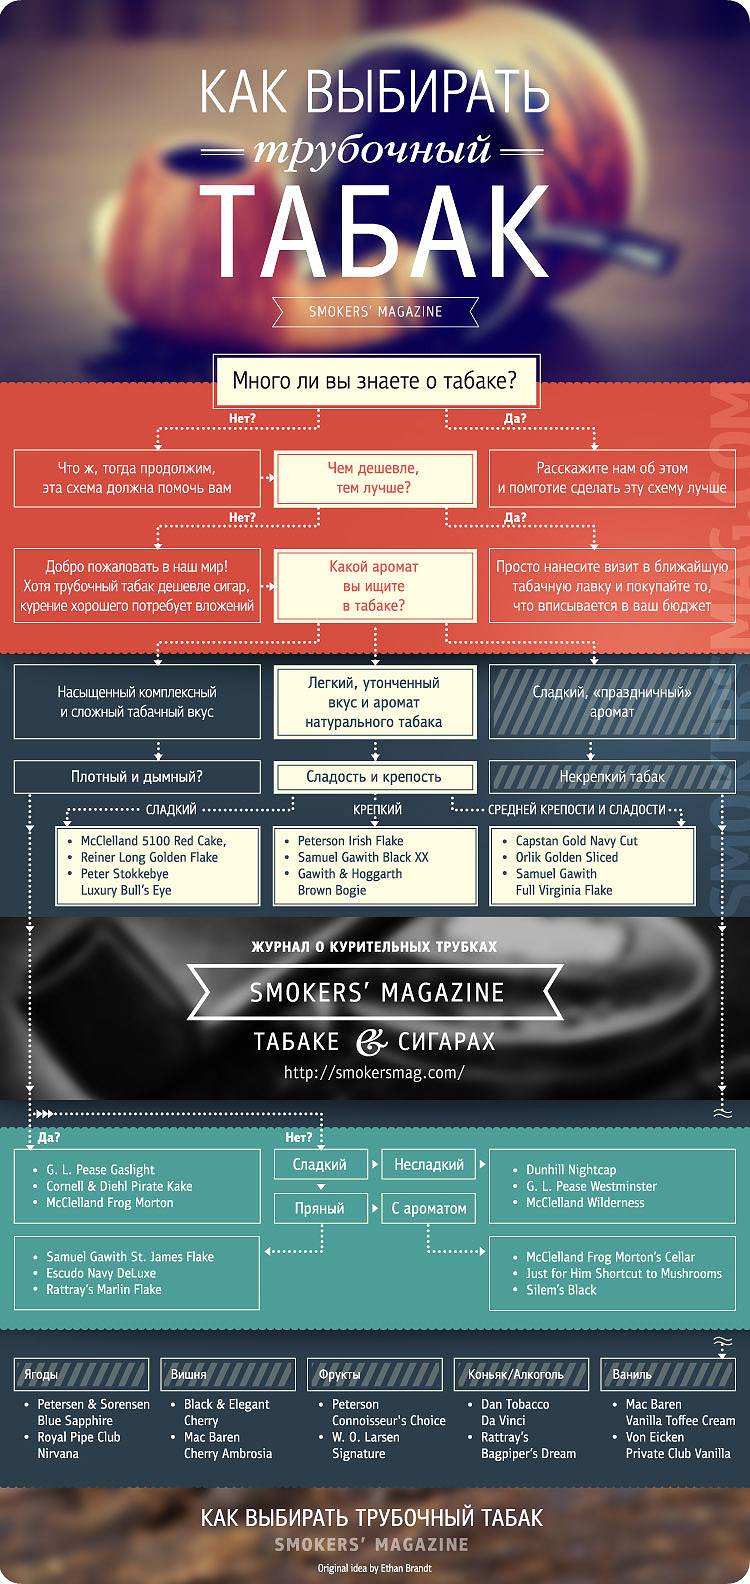 Как правильно выбирать трубочный табак - Советы - Инфографика